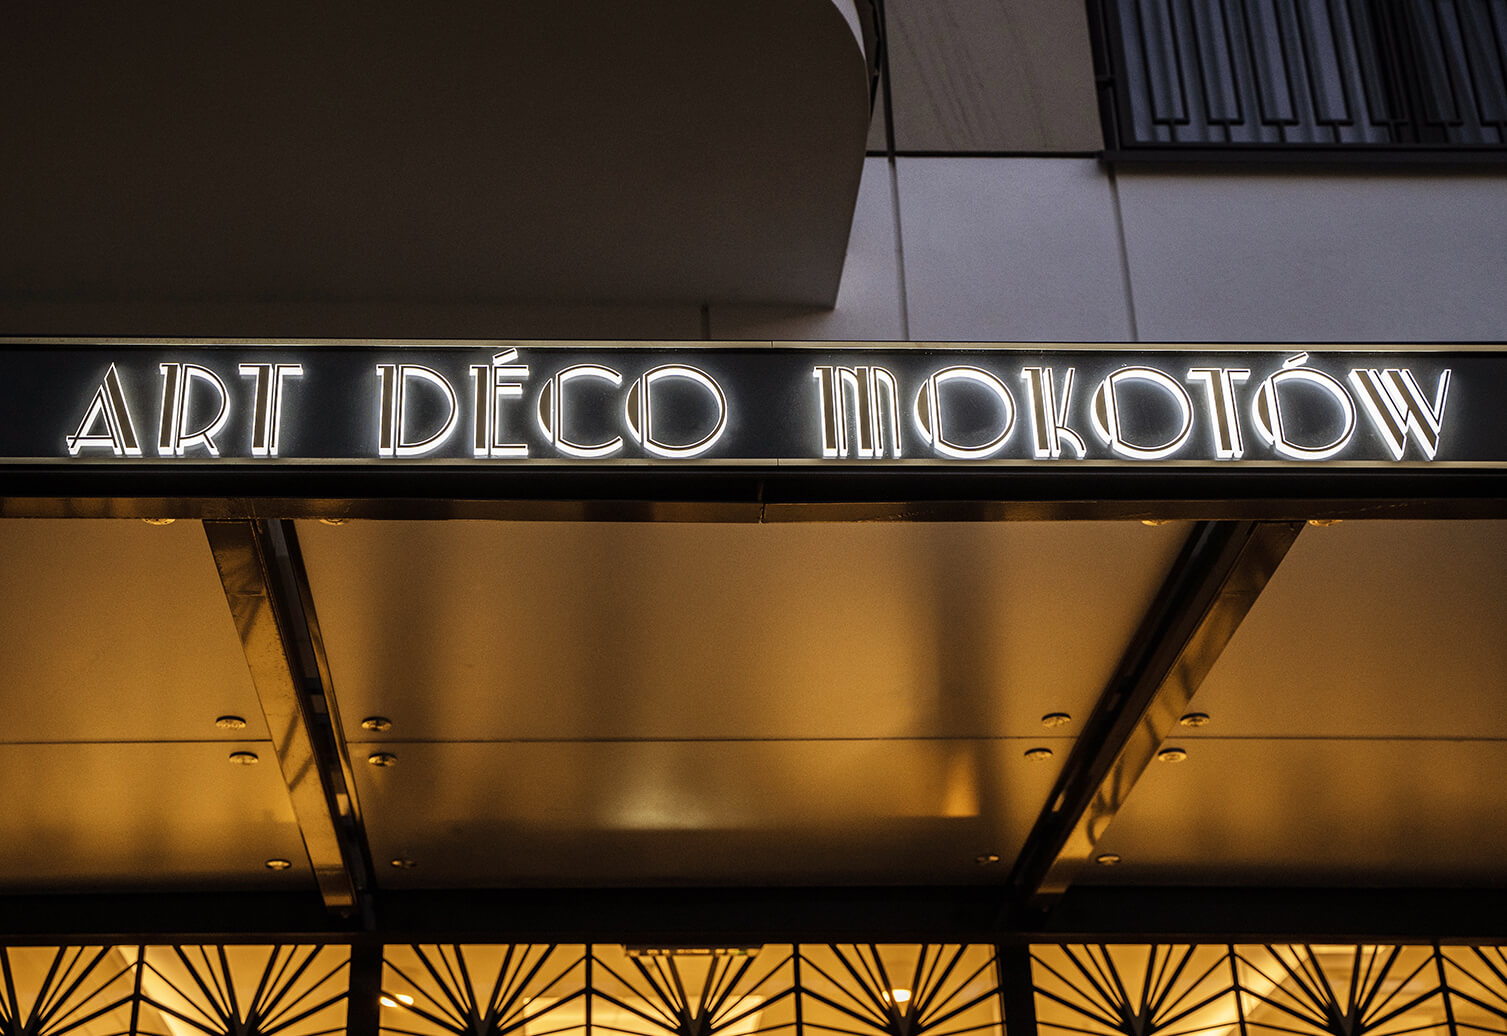 Art Deco Mokotow - Goudkleurige dibond coffer boven Art Deco Mokotow ingang, LED achtergrondverlichting.